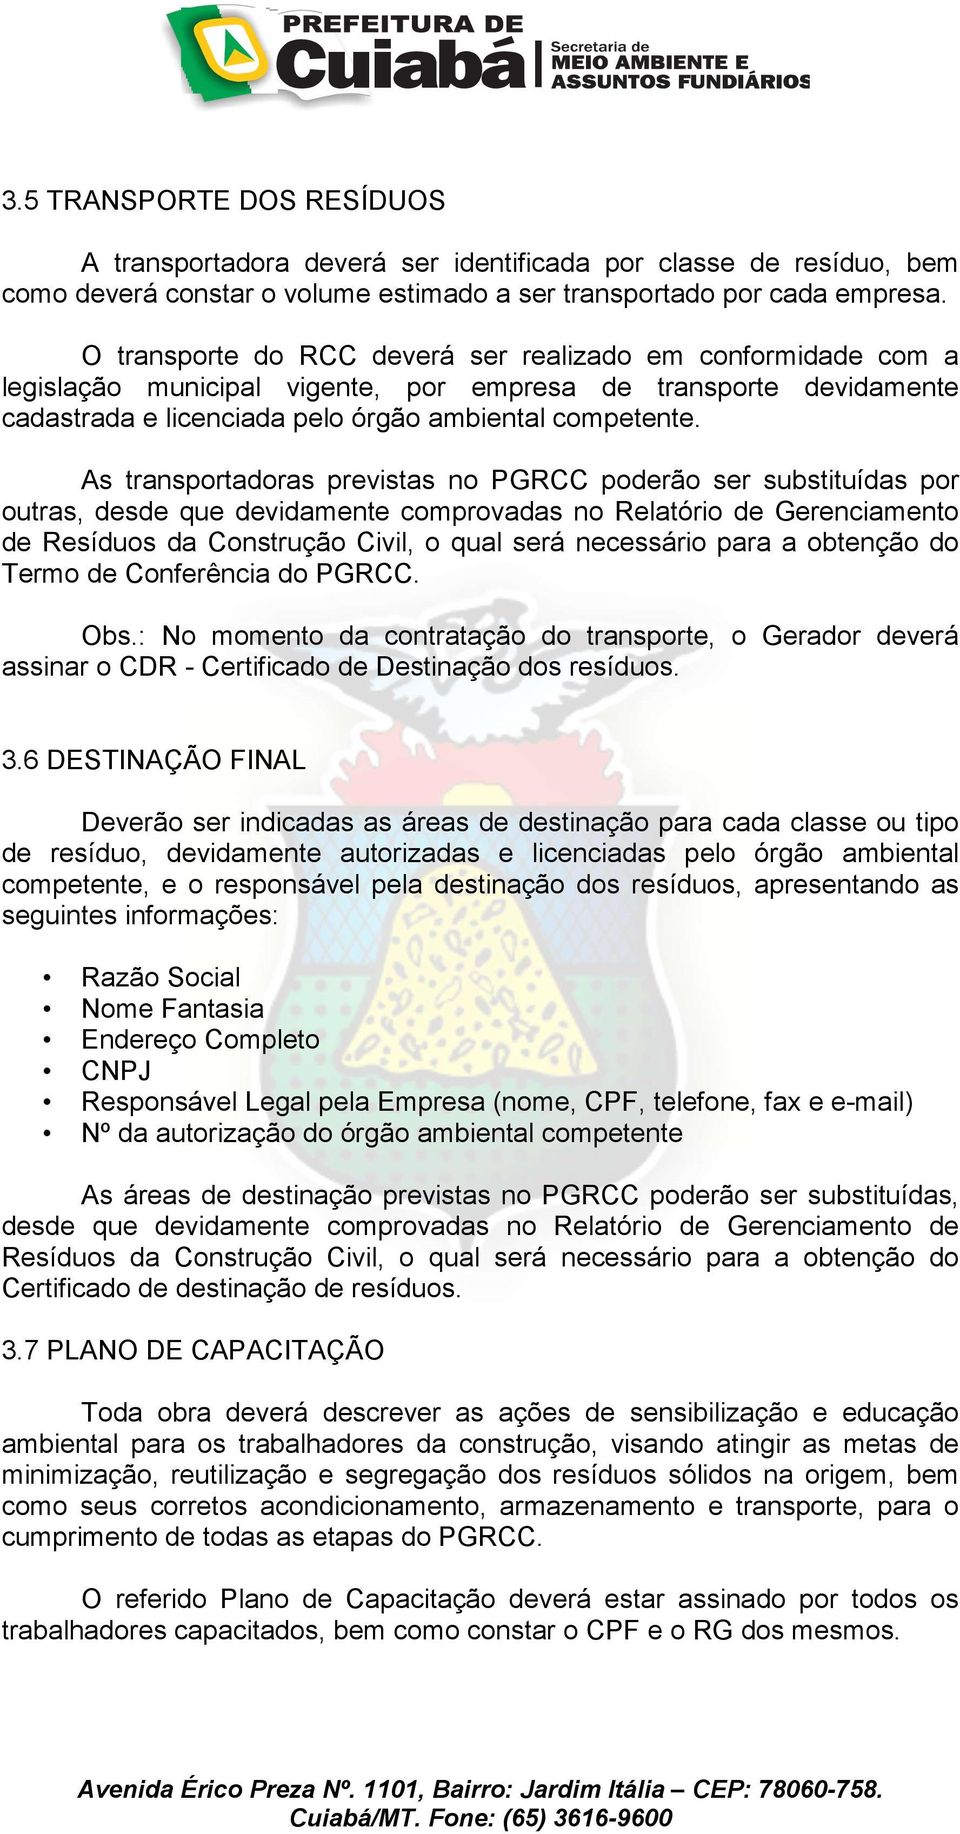 As transportadoras previstas no PGRCC poderão ser substituídas por outras, desde que devidamente comprovadas no Relatório de Gerenciamento de Resíduos da Construção Civil, o qual será necessário para